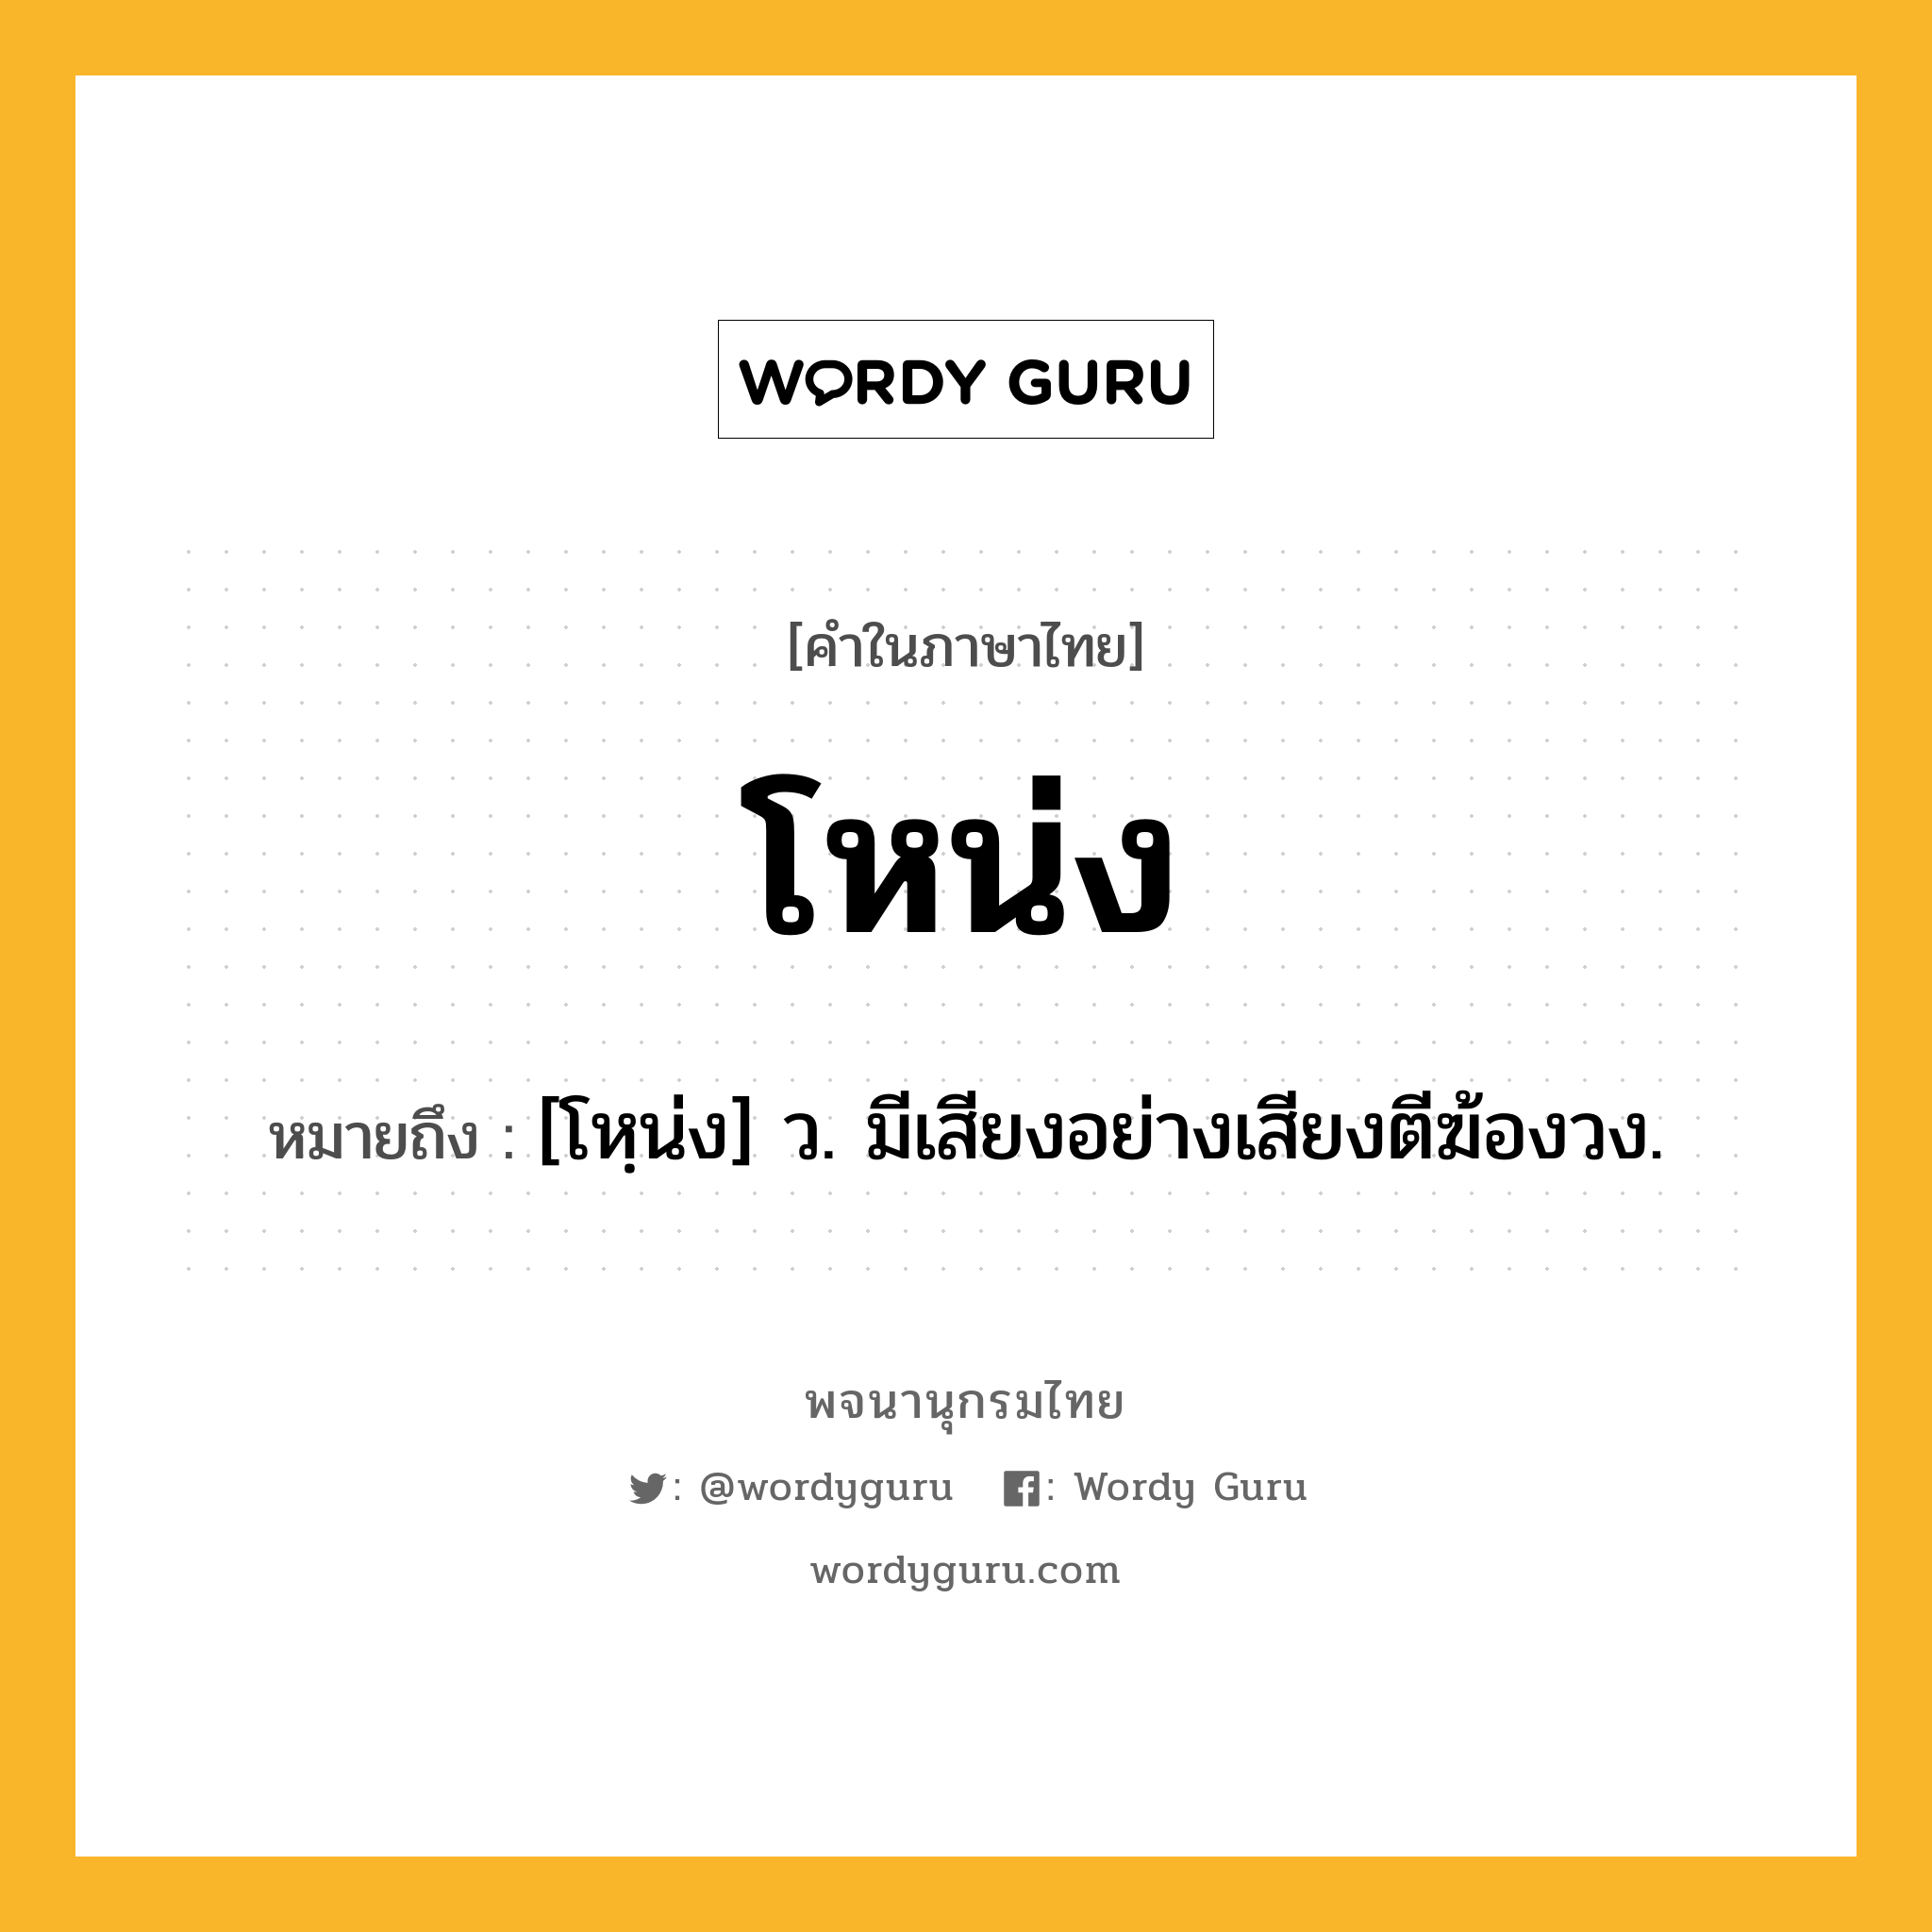 โหน่ง หมายถึงอะไร?, คำในภาษาไทย โหน่ง หมายถึง [โหฺน่ง] ว. มีเสียงอย่างเสียงตีฆ้องวง.